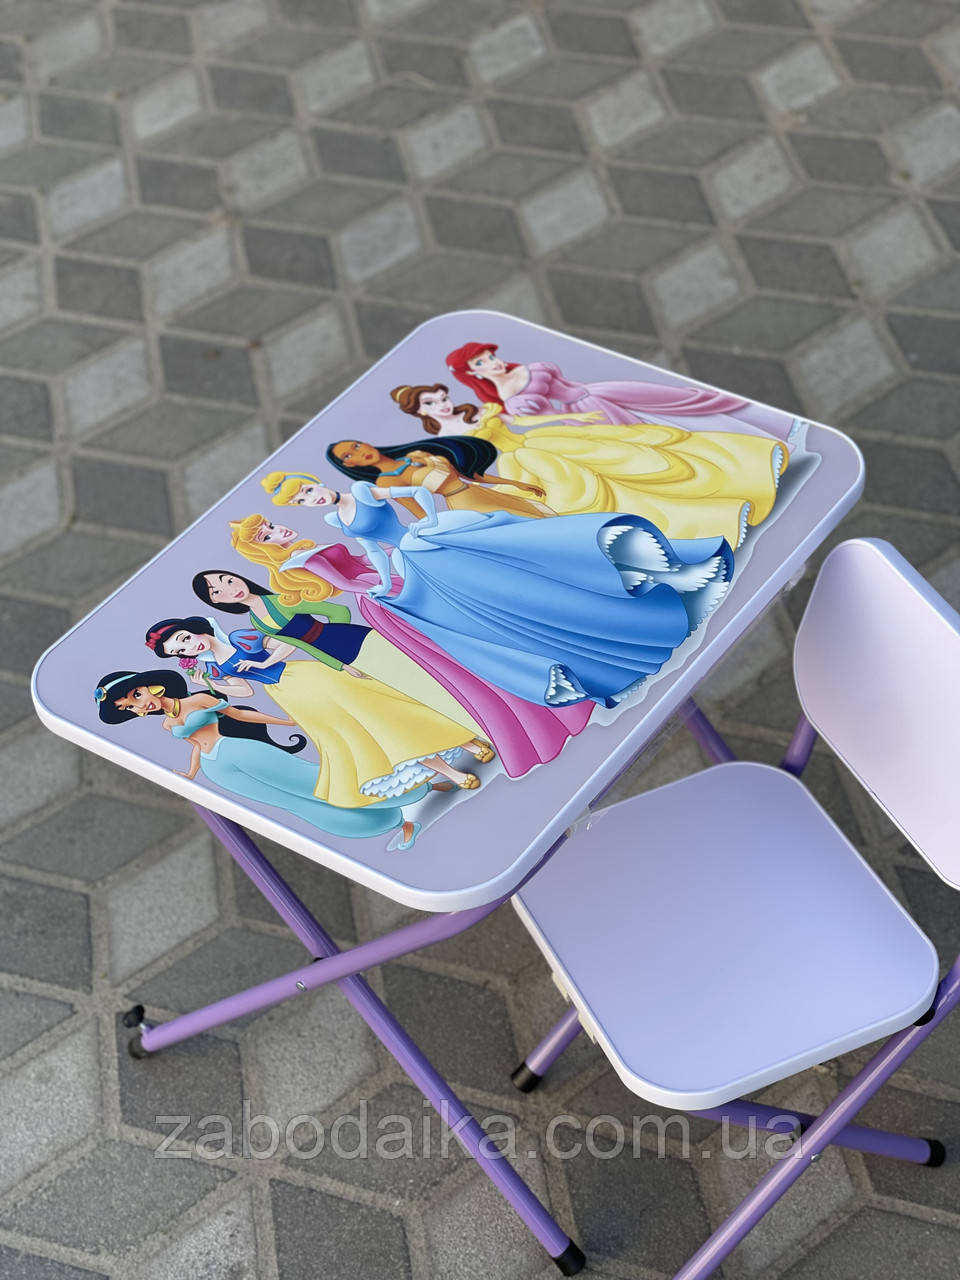 Дитячий столик і стільчик розкладний, Принцеси Дісней, парта для малювання, творець, ігор для дівчинки